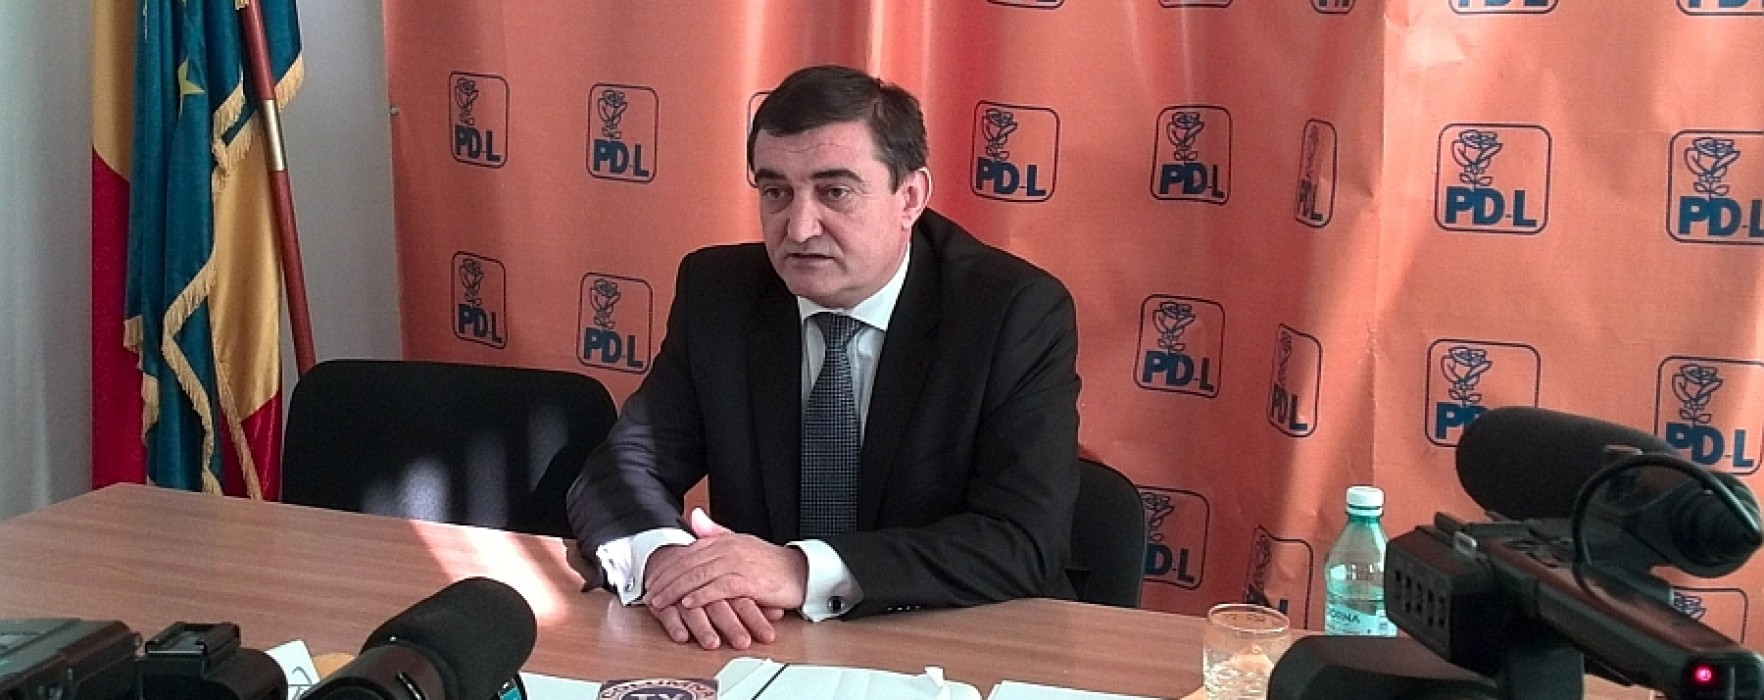 Deputatul Iulian Vladu, ales preşedinte al organizaţiei judeţene a PDL